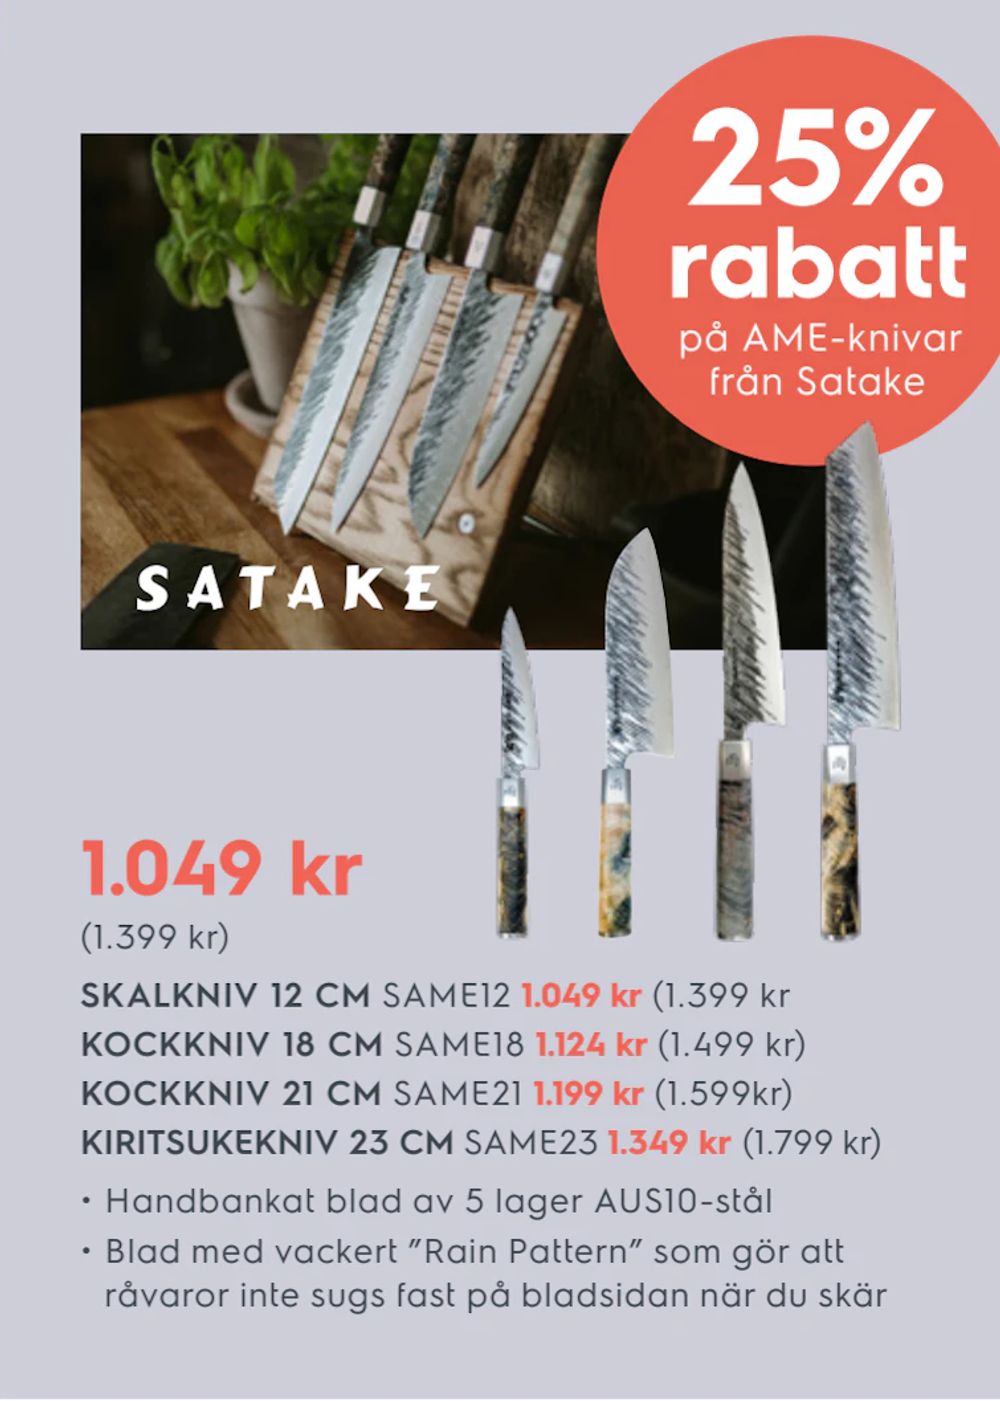 Erbjudanden på 25% rabatt på AME- knivar från Satake från Electrolux Home för 1 049 kr